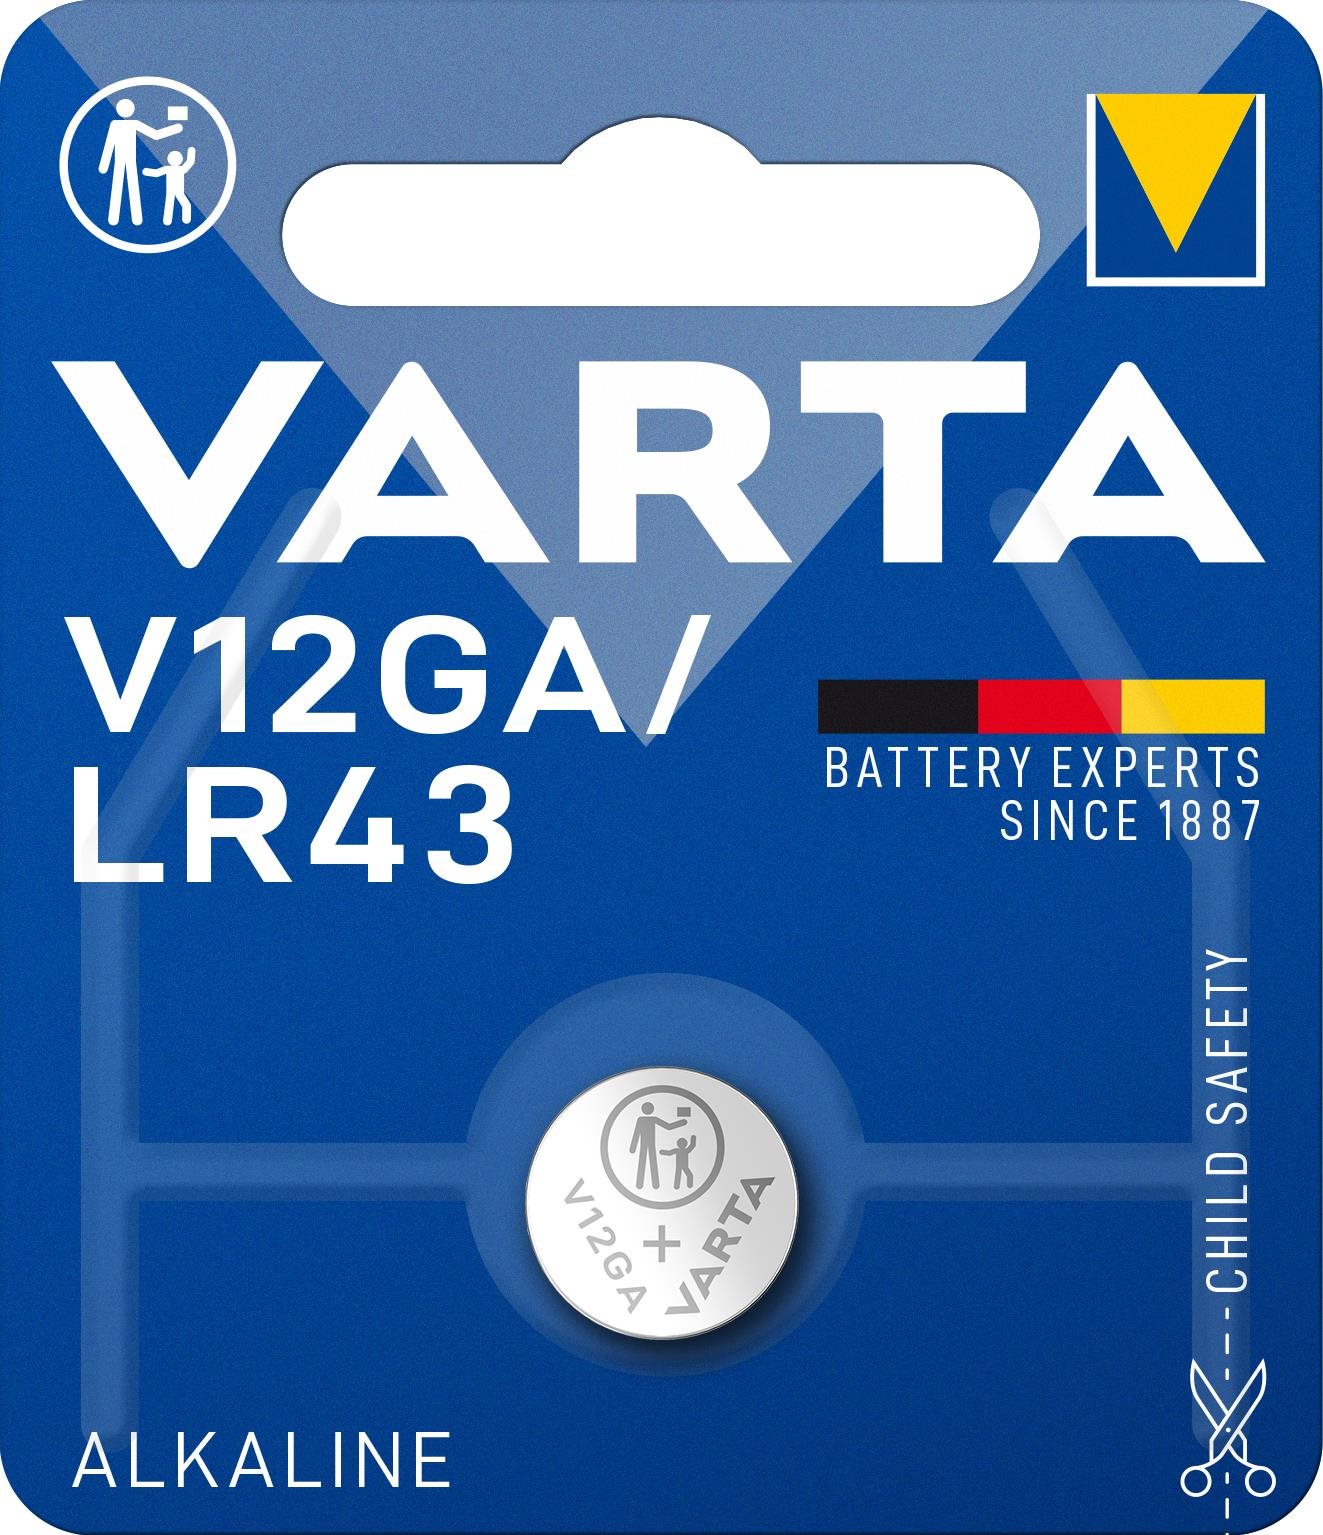 VARTA Speciális alkáli elem V12GA/LR43 1 db